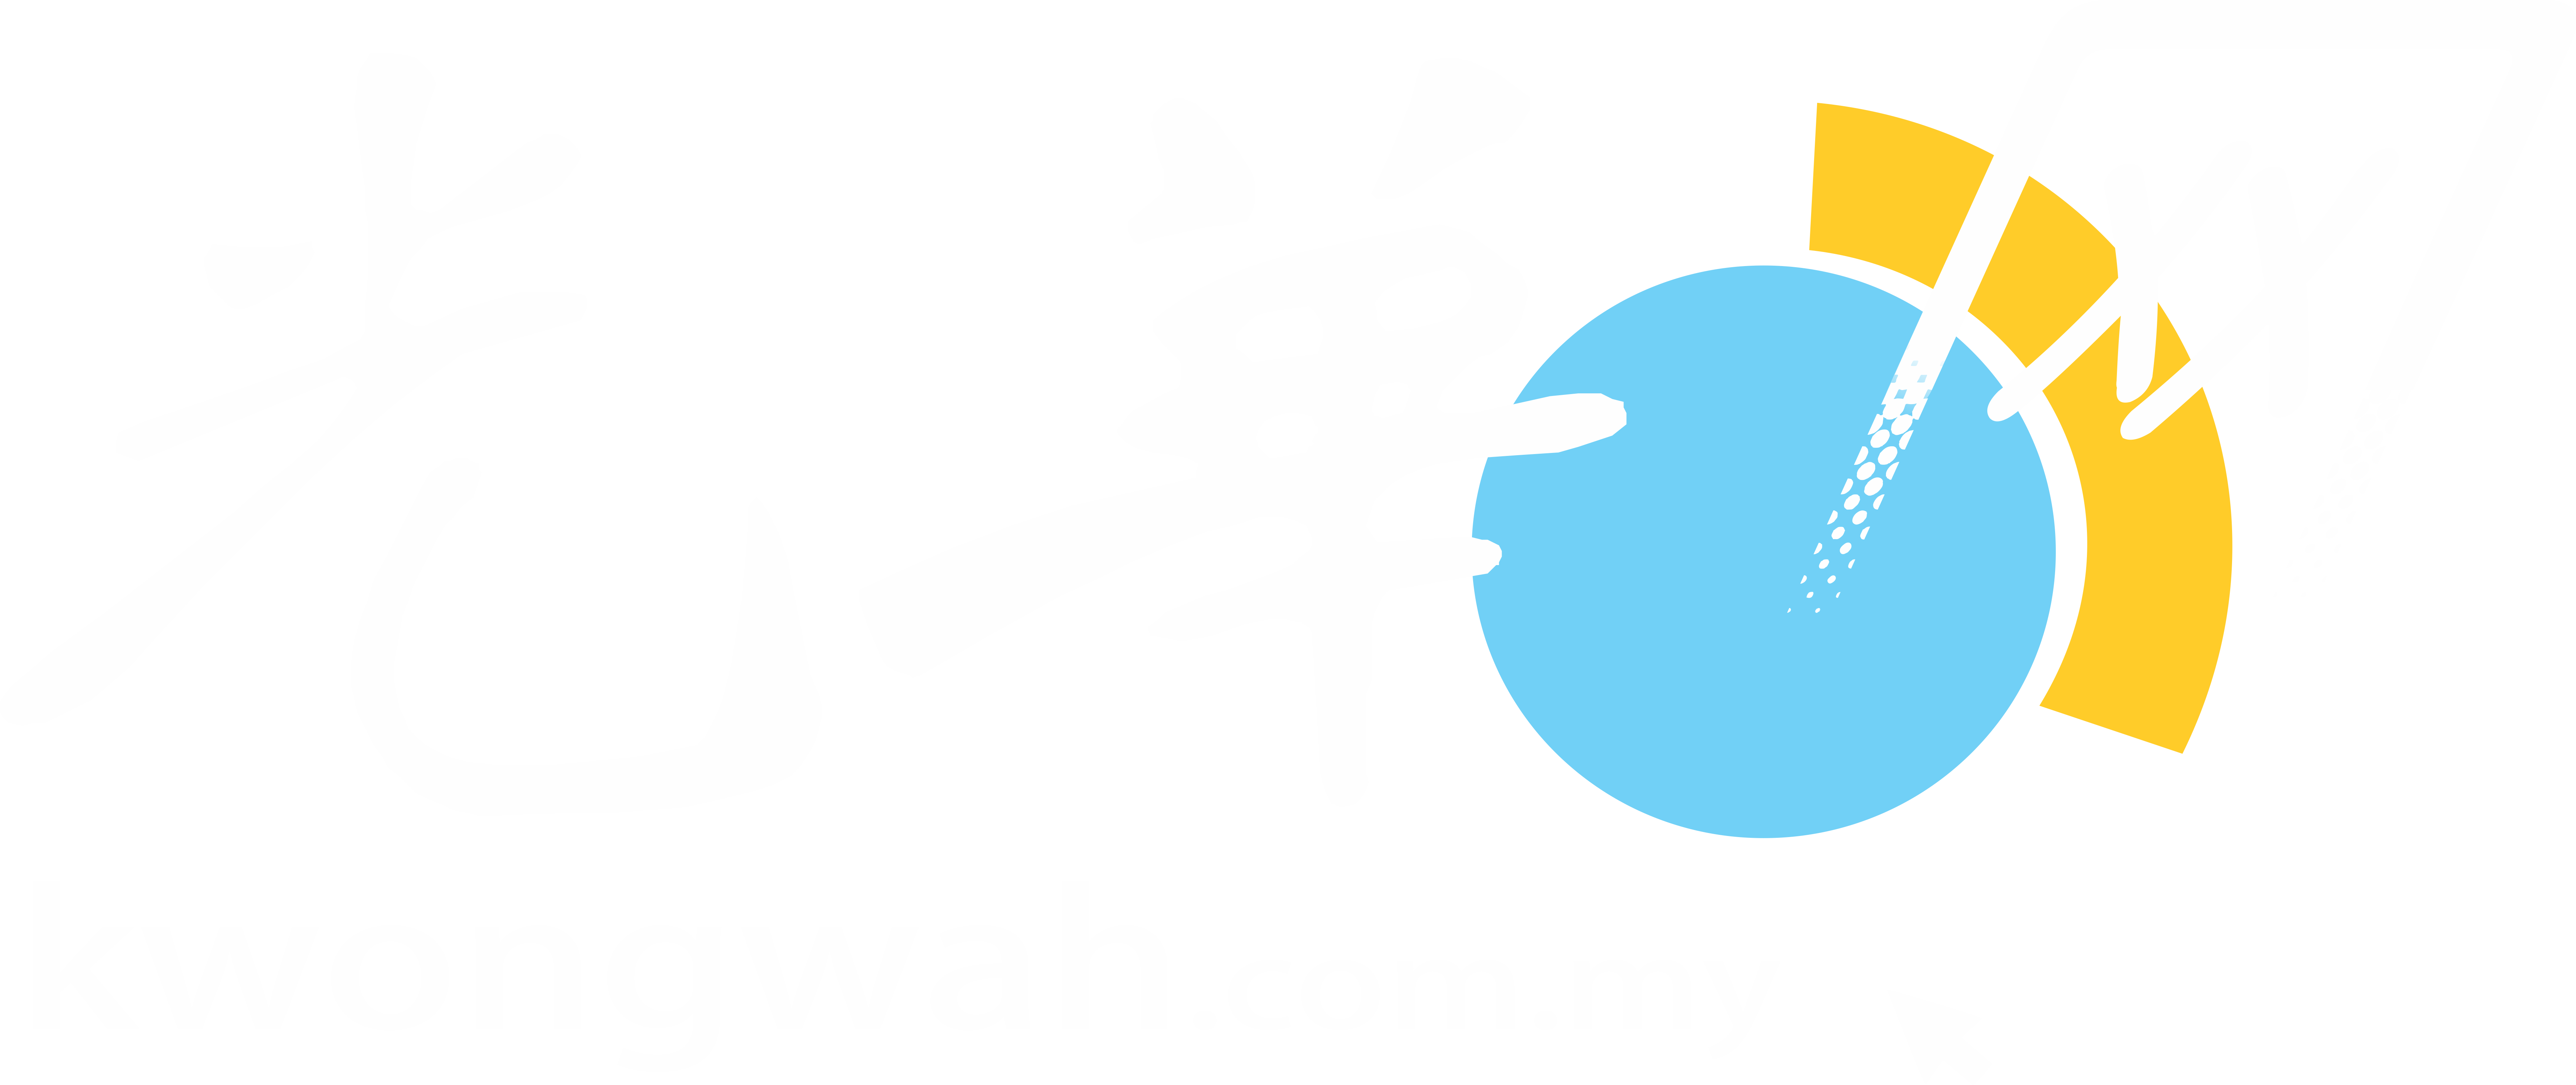 Wah daily kwong Wikizero